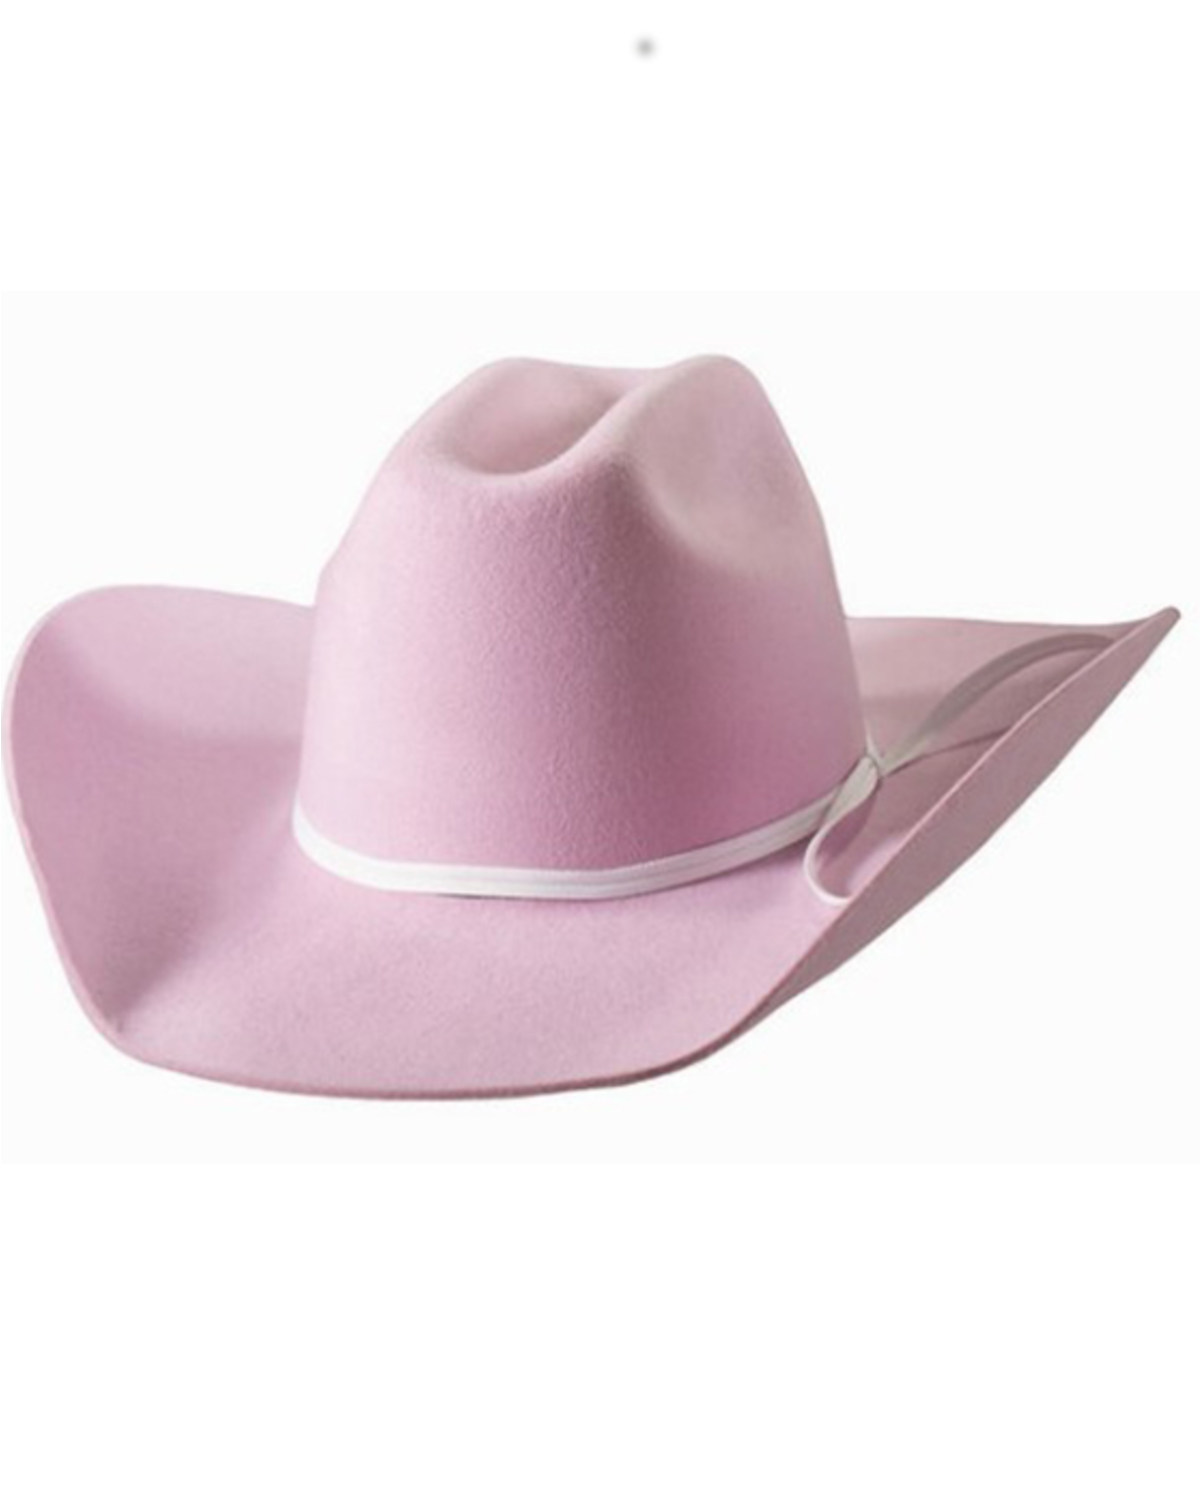 M & F Western Girls' Felt Cowboy Hat